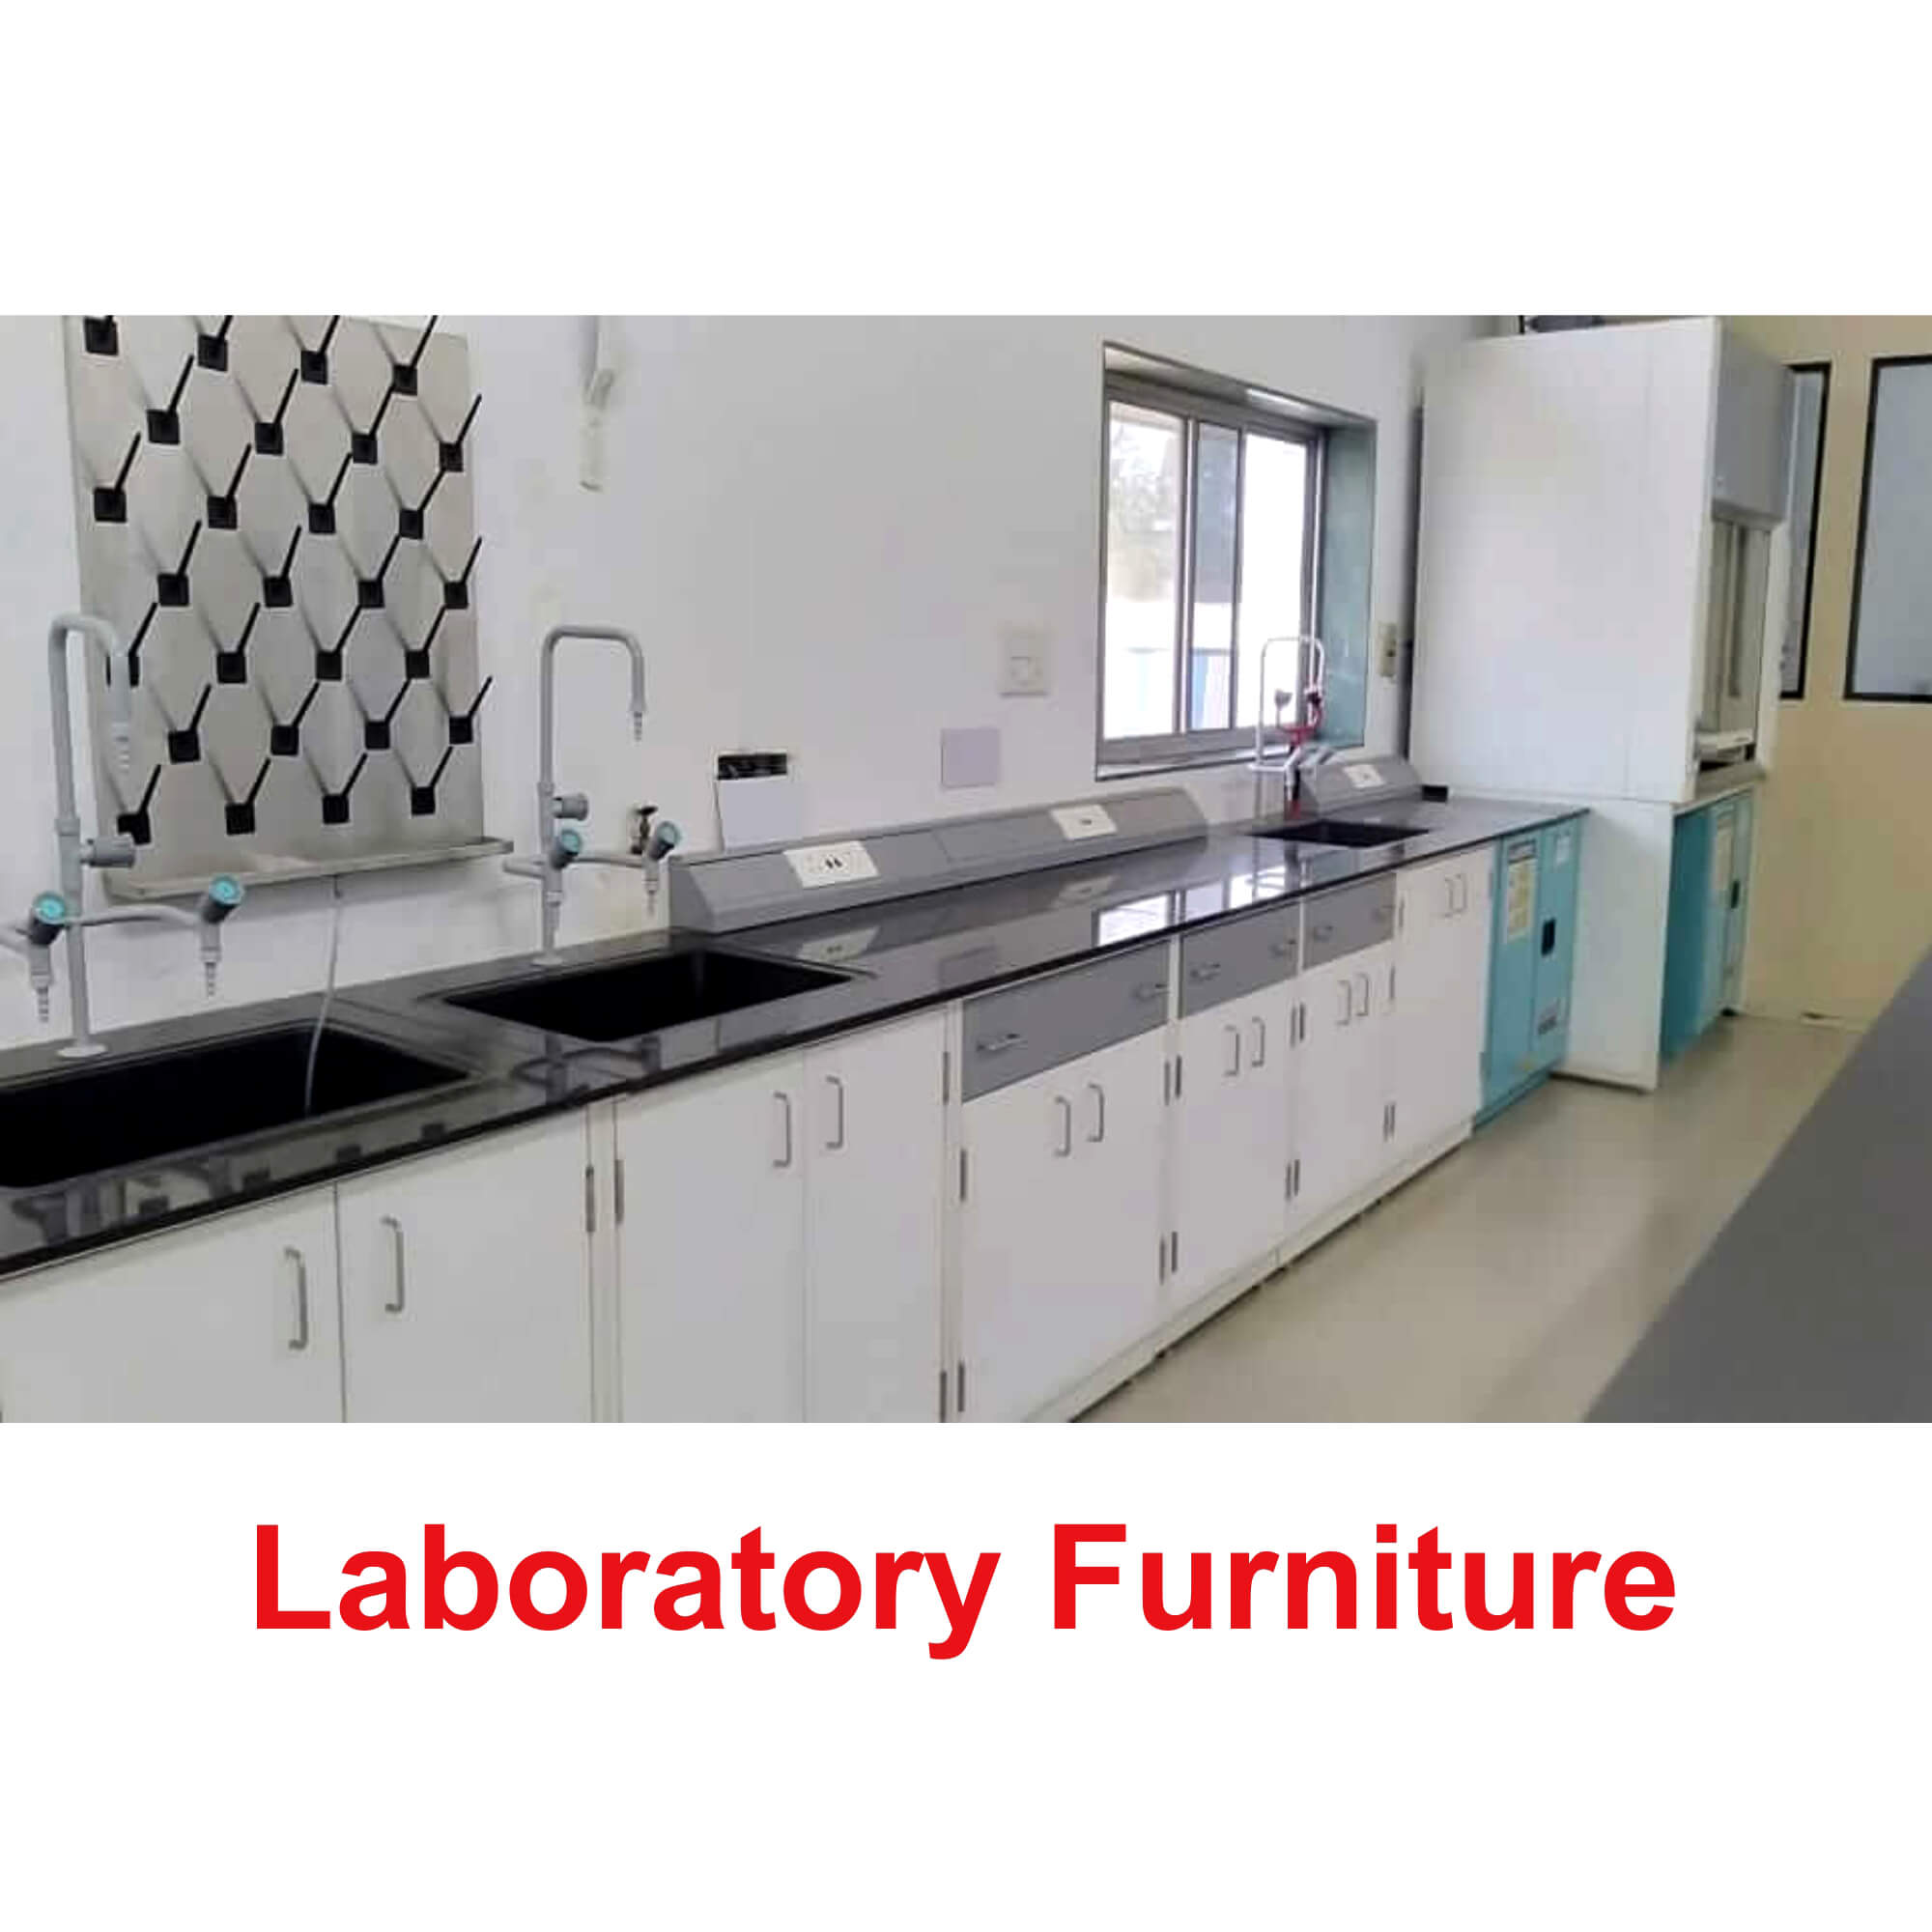 Laboratory Furniture Manufacturer in India